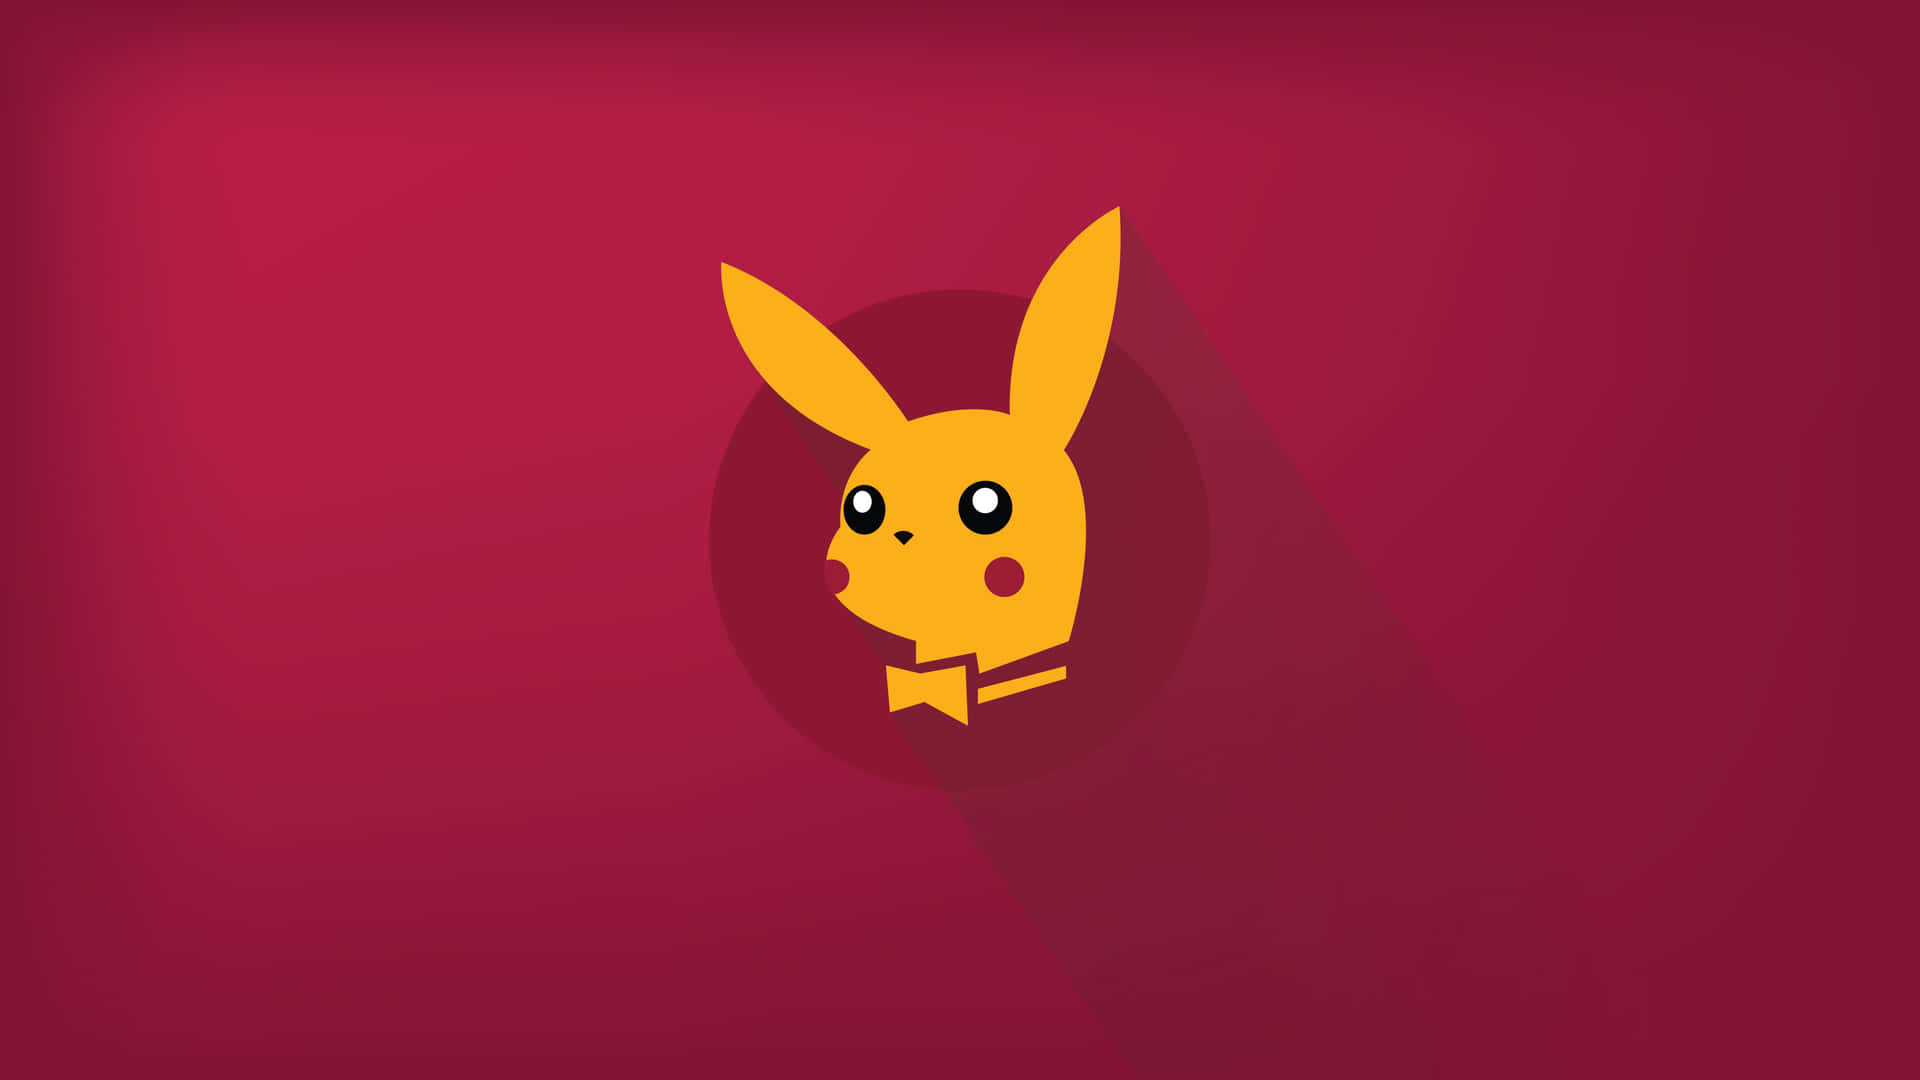 Minimalist Pikachu Picture